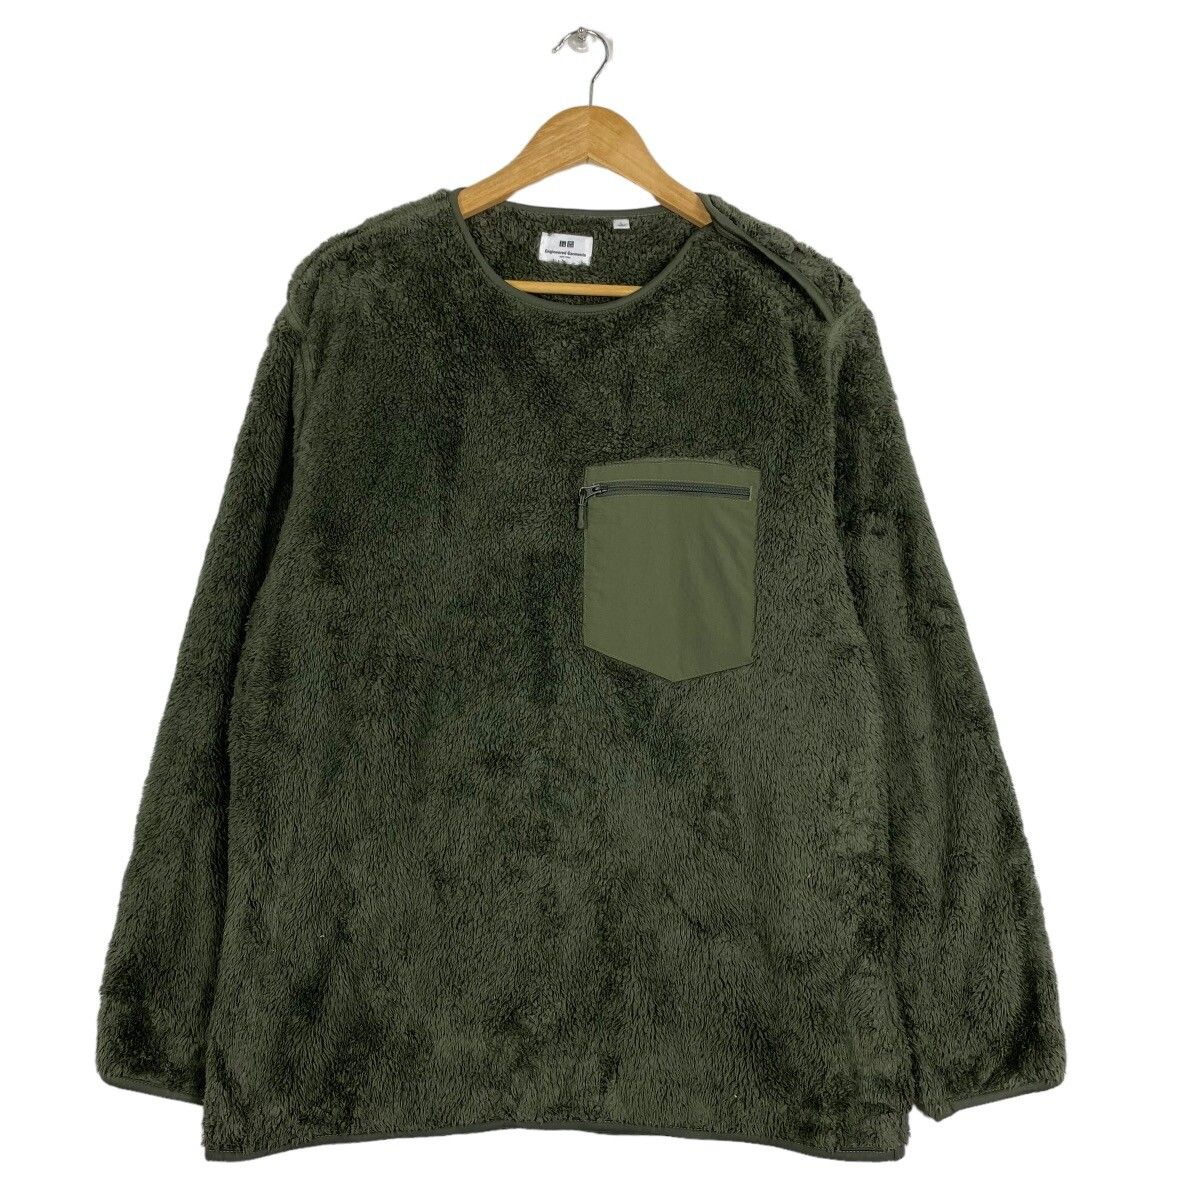 Uniqlo x Engineered Garments Fleece Sweater - 1